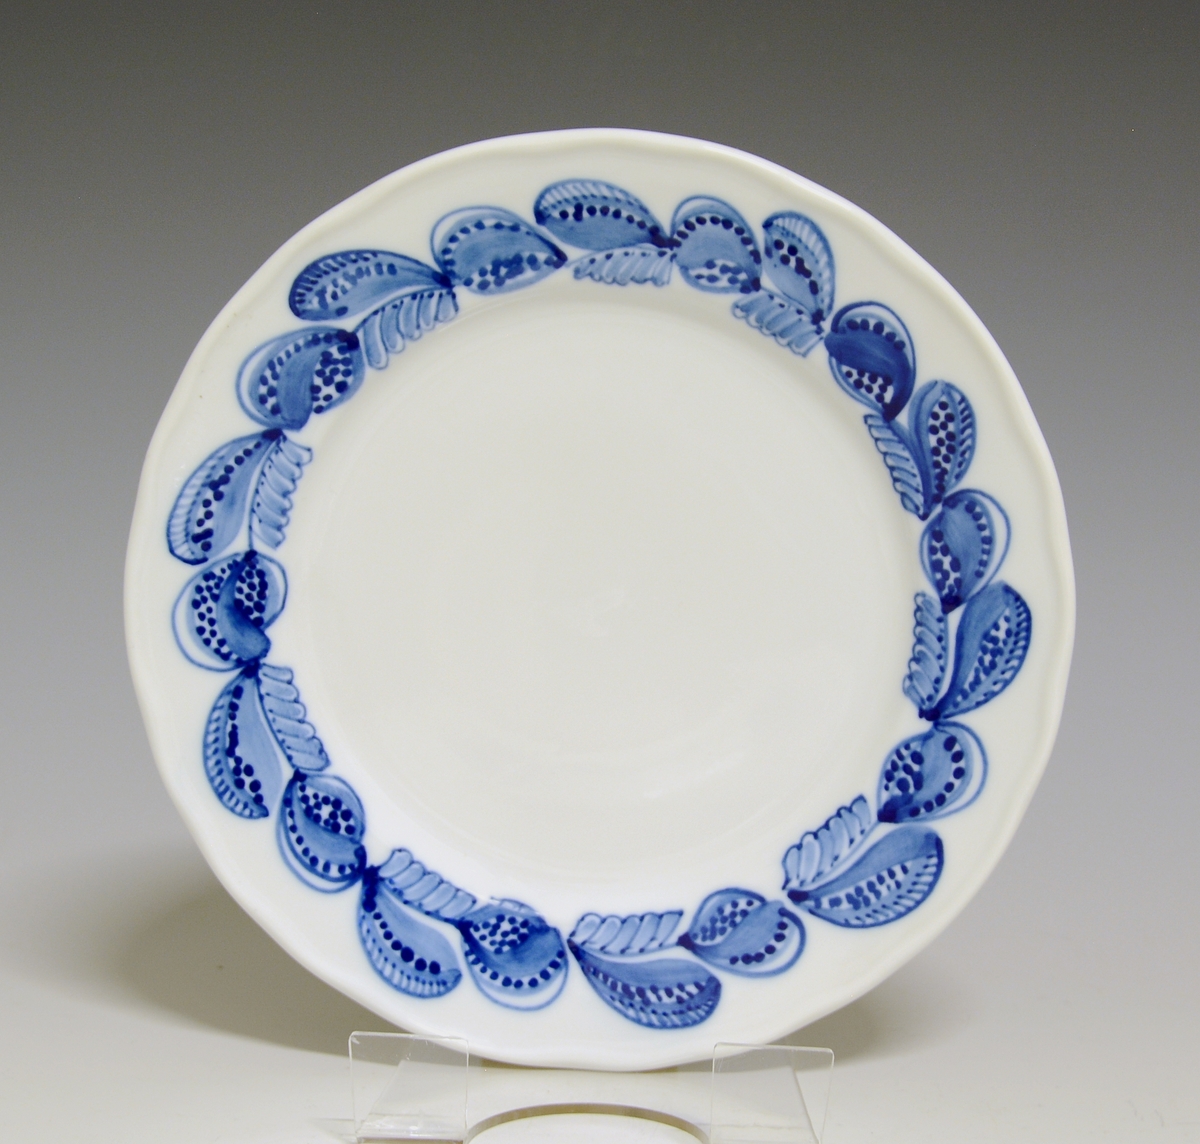 Liten tallerken av porselen. Hvit glasur. Håndmalt underglasurdekor i blått på fanen 
Modell: Victoria, 1800